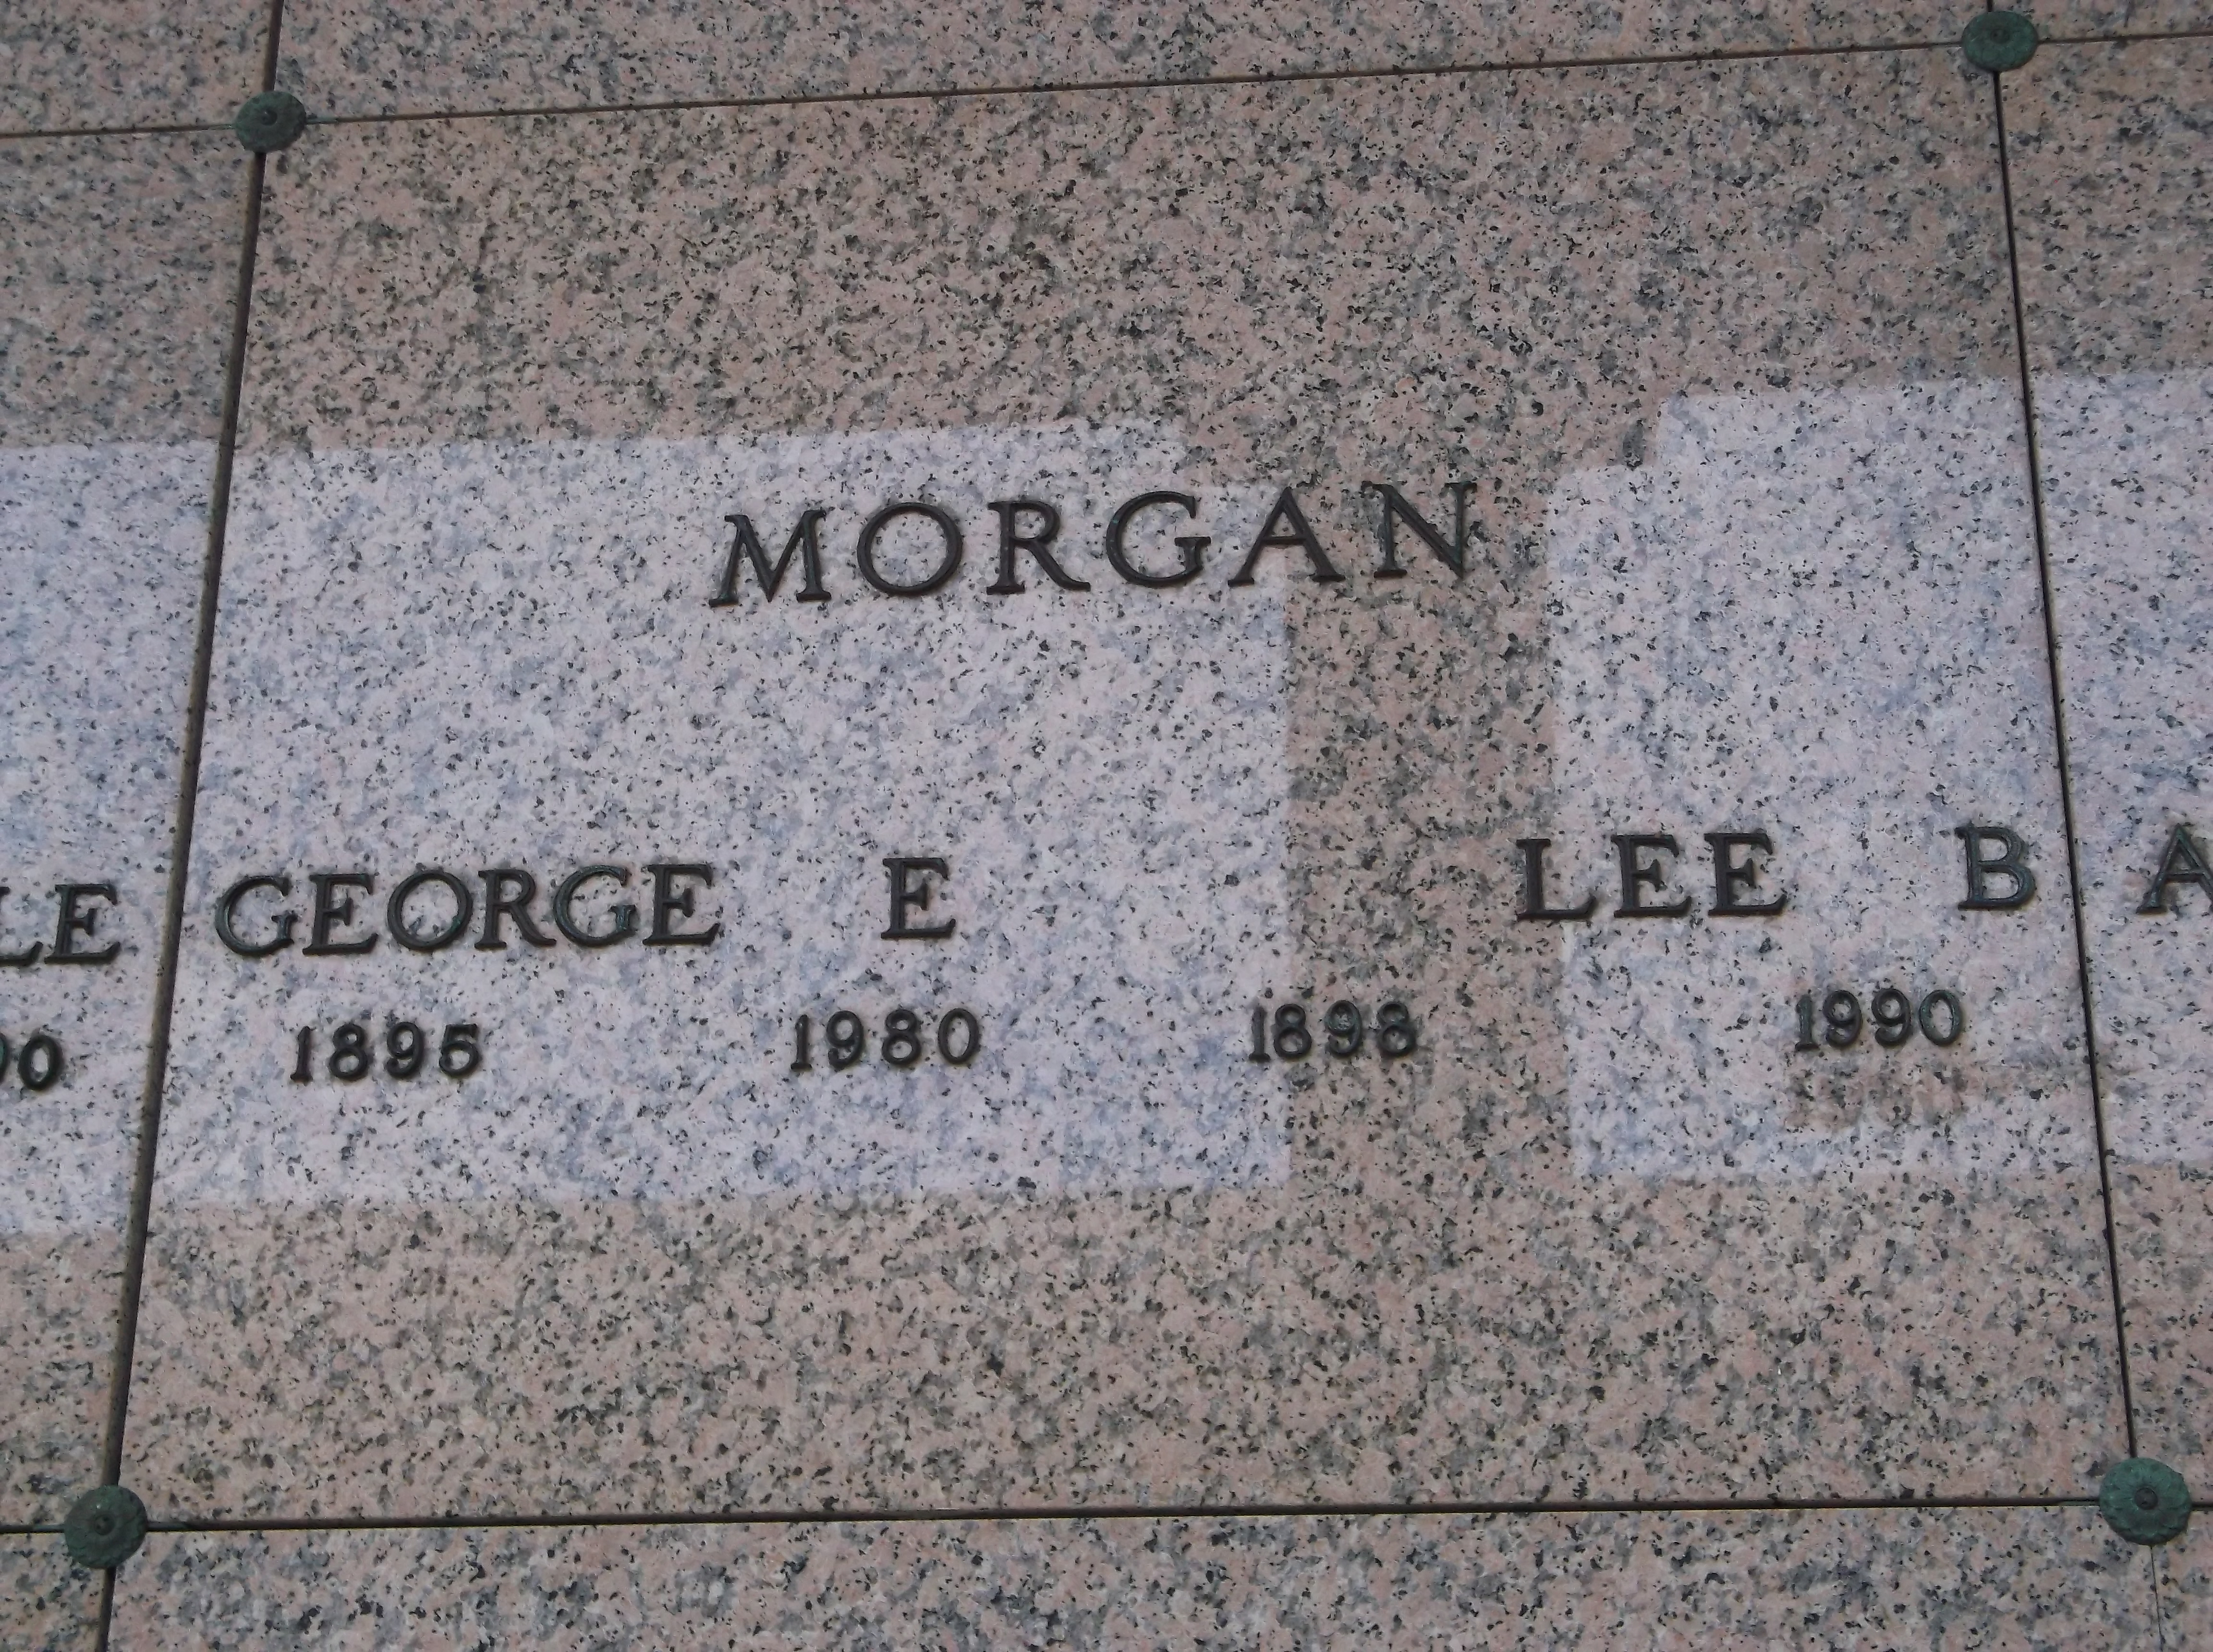 George E Morgan